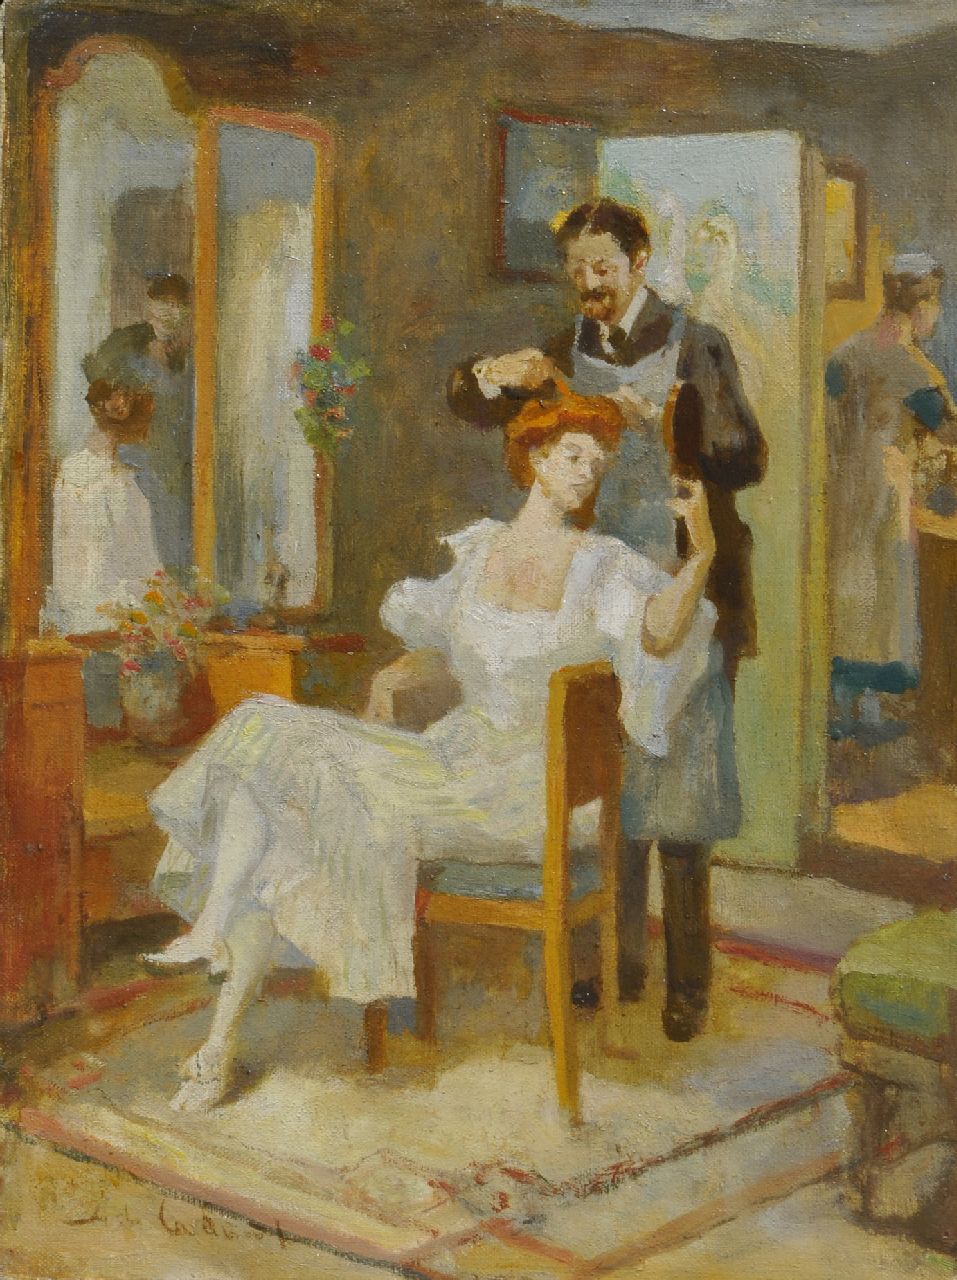 Rivière A.P. de la | Adrianus Philippus 'Adriaan' de la Rivière, The hairdresser's visit, oil on canvas 40.5 x 30.8 cm, signed l.l.